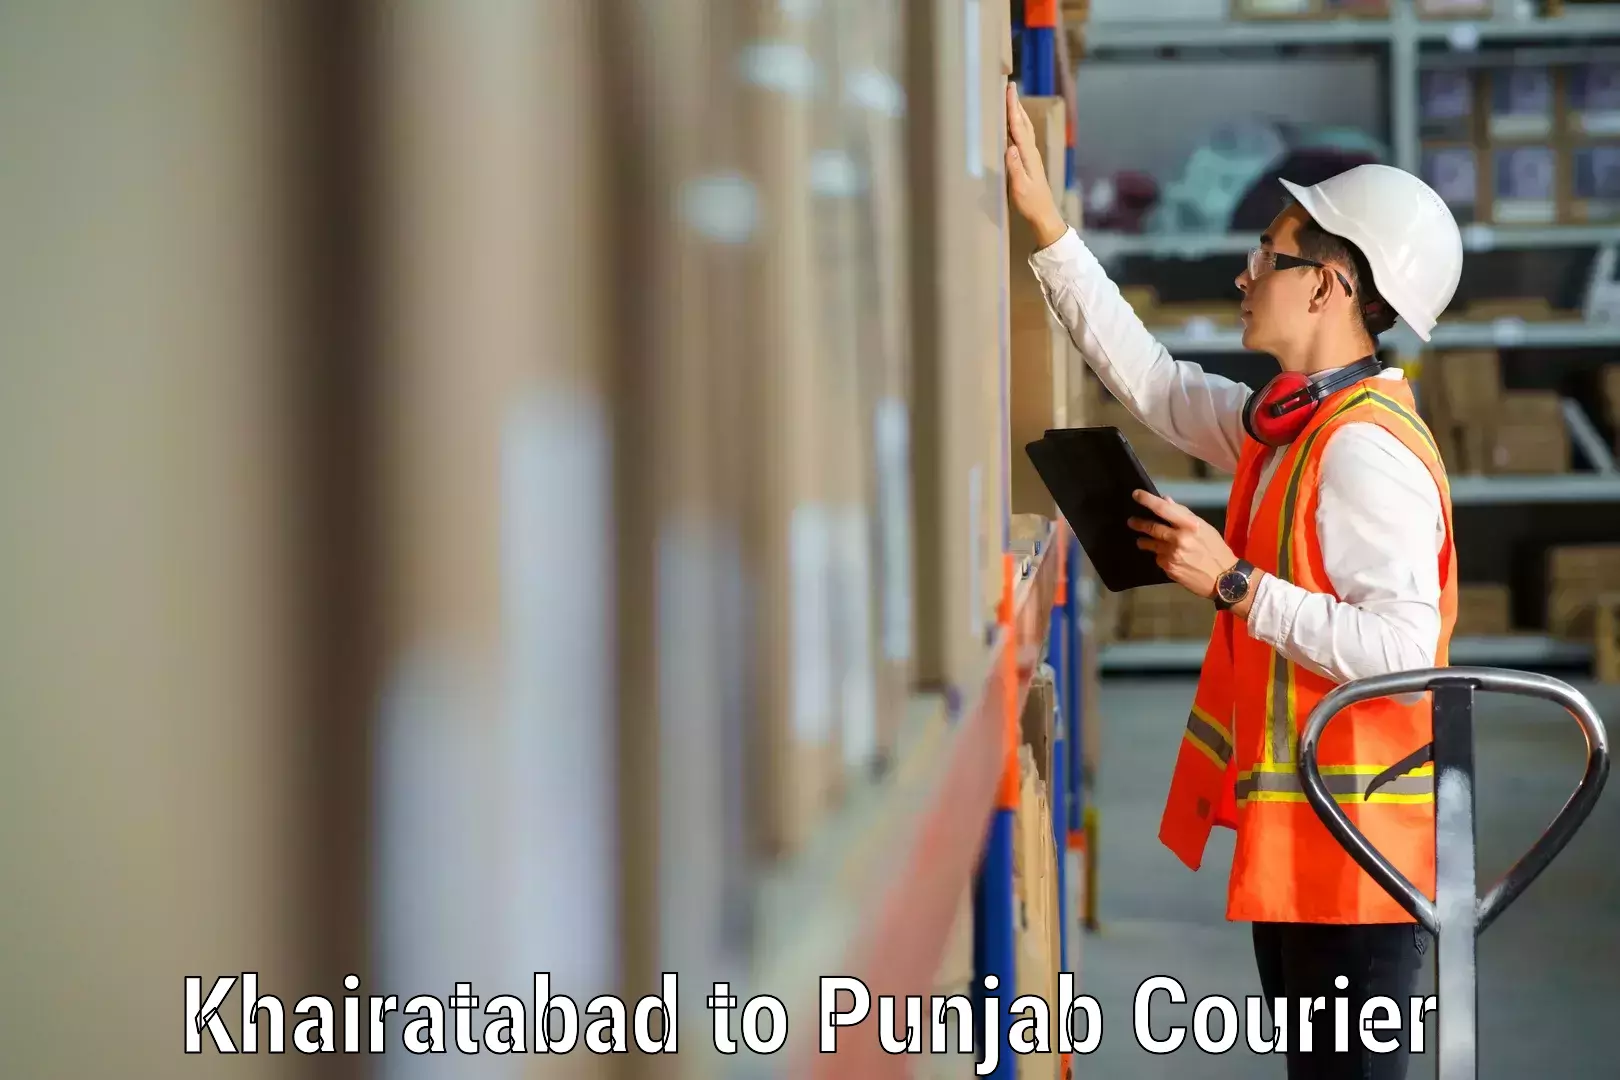 Skilled furniture transport Khairatabad to Central University of Punjab Bathinda